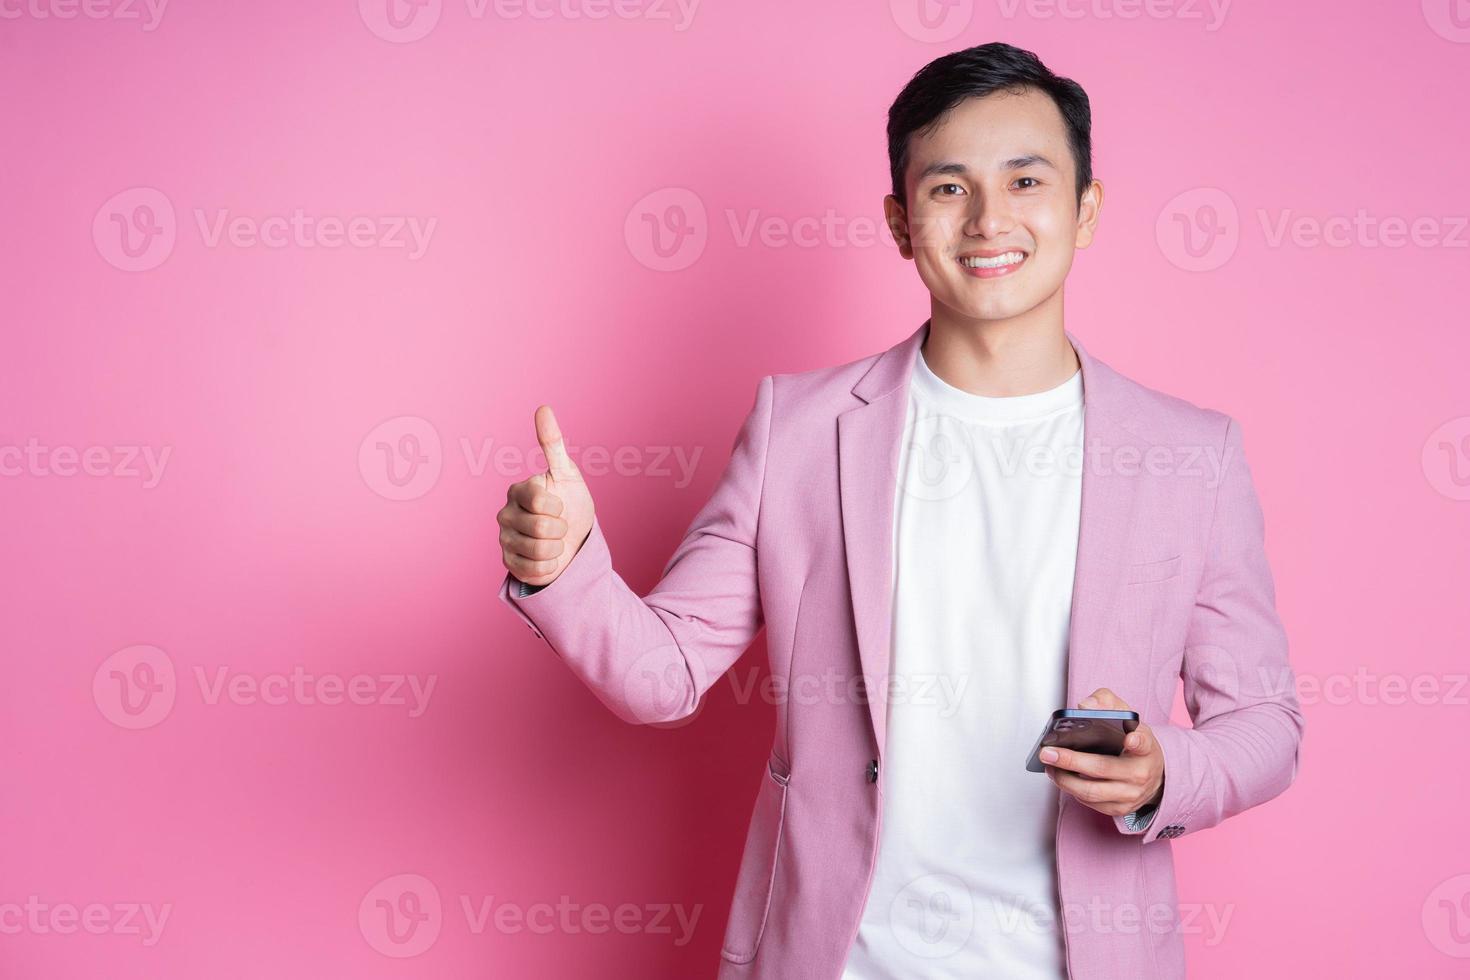 Porträt eines jungen asiatischen Mannes mit rosafarbenem Anzug, der im Hintergrund posiert foto